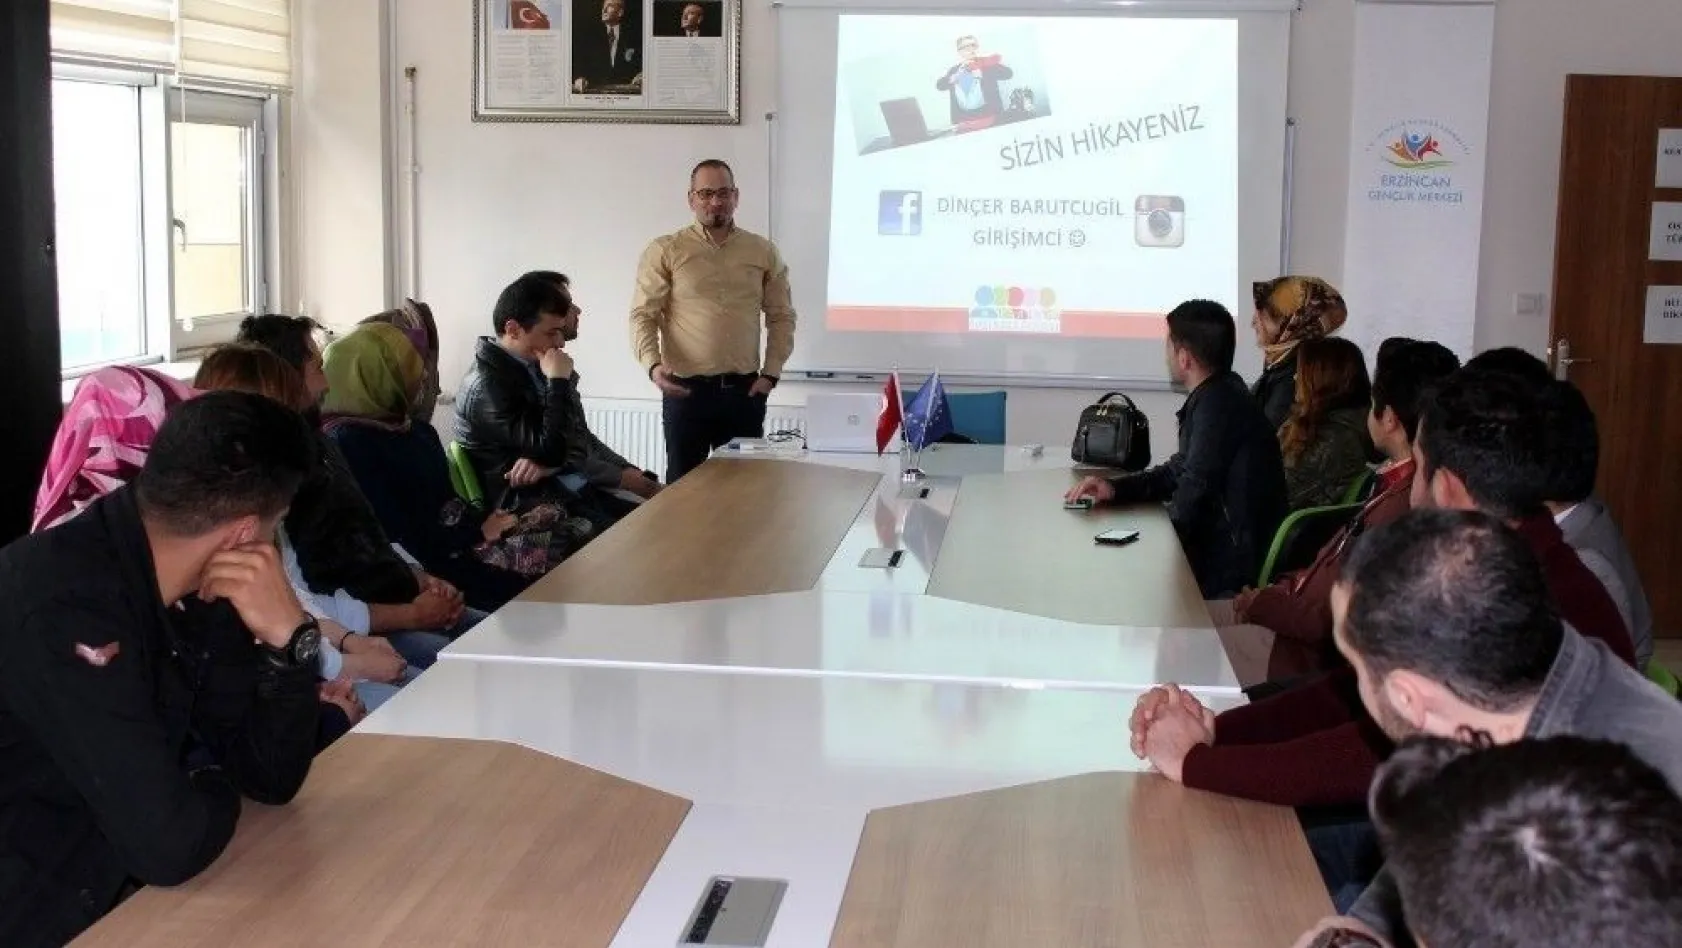 Erzincan Gençlik Merkezi'nde Uygulamalı Girişimcilik Eğitimi Başladı
